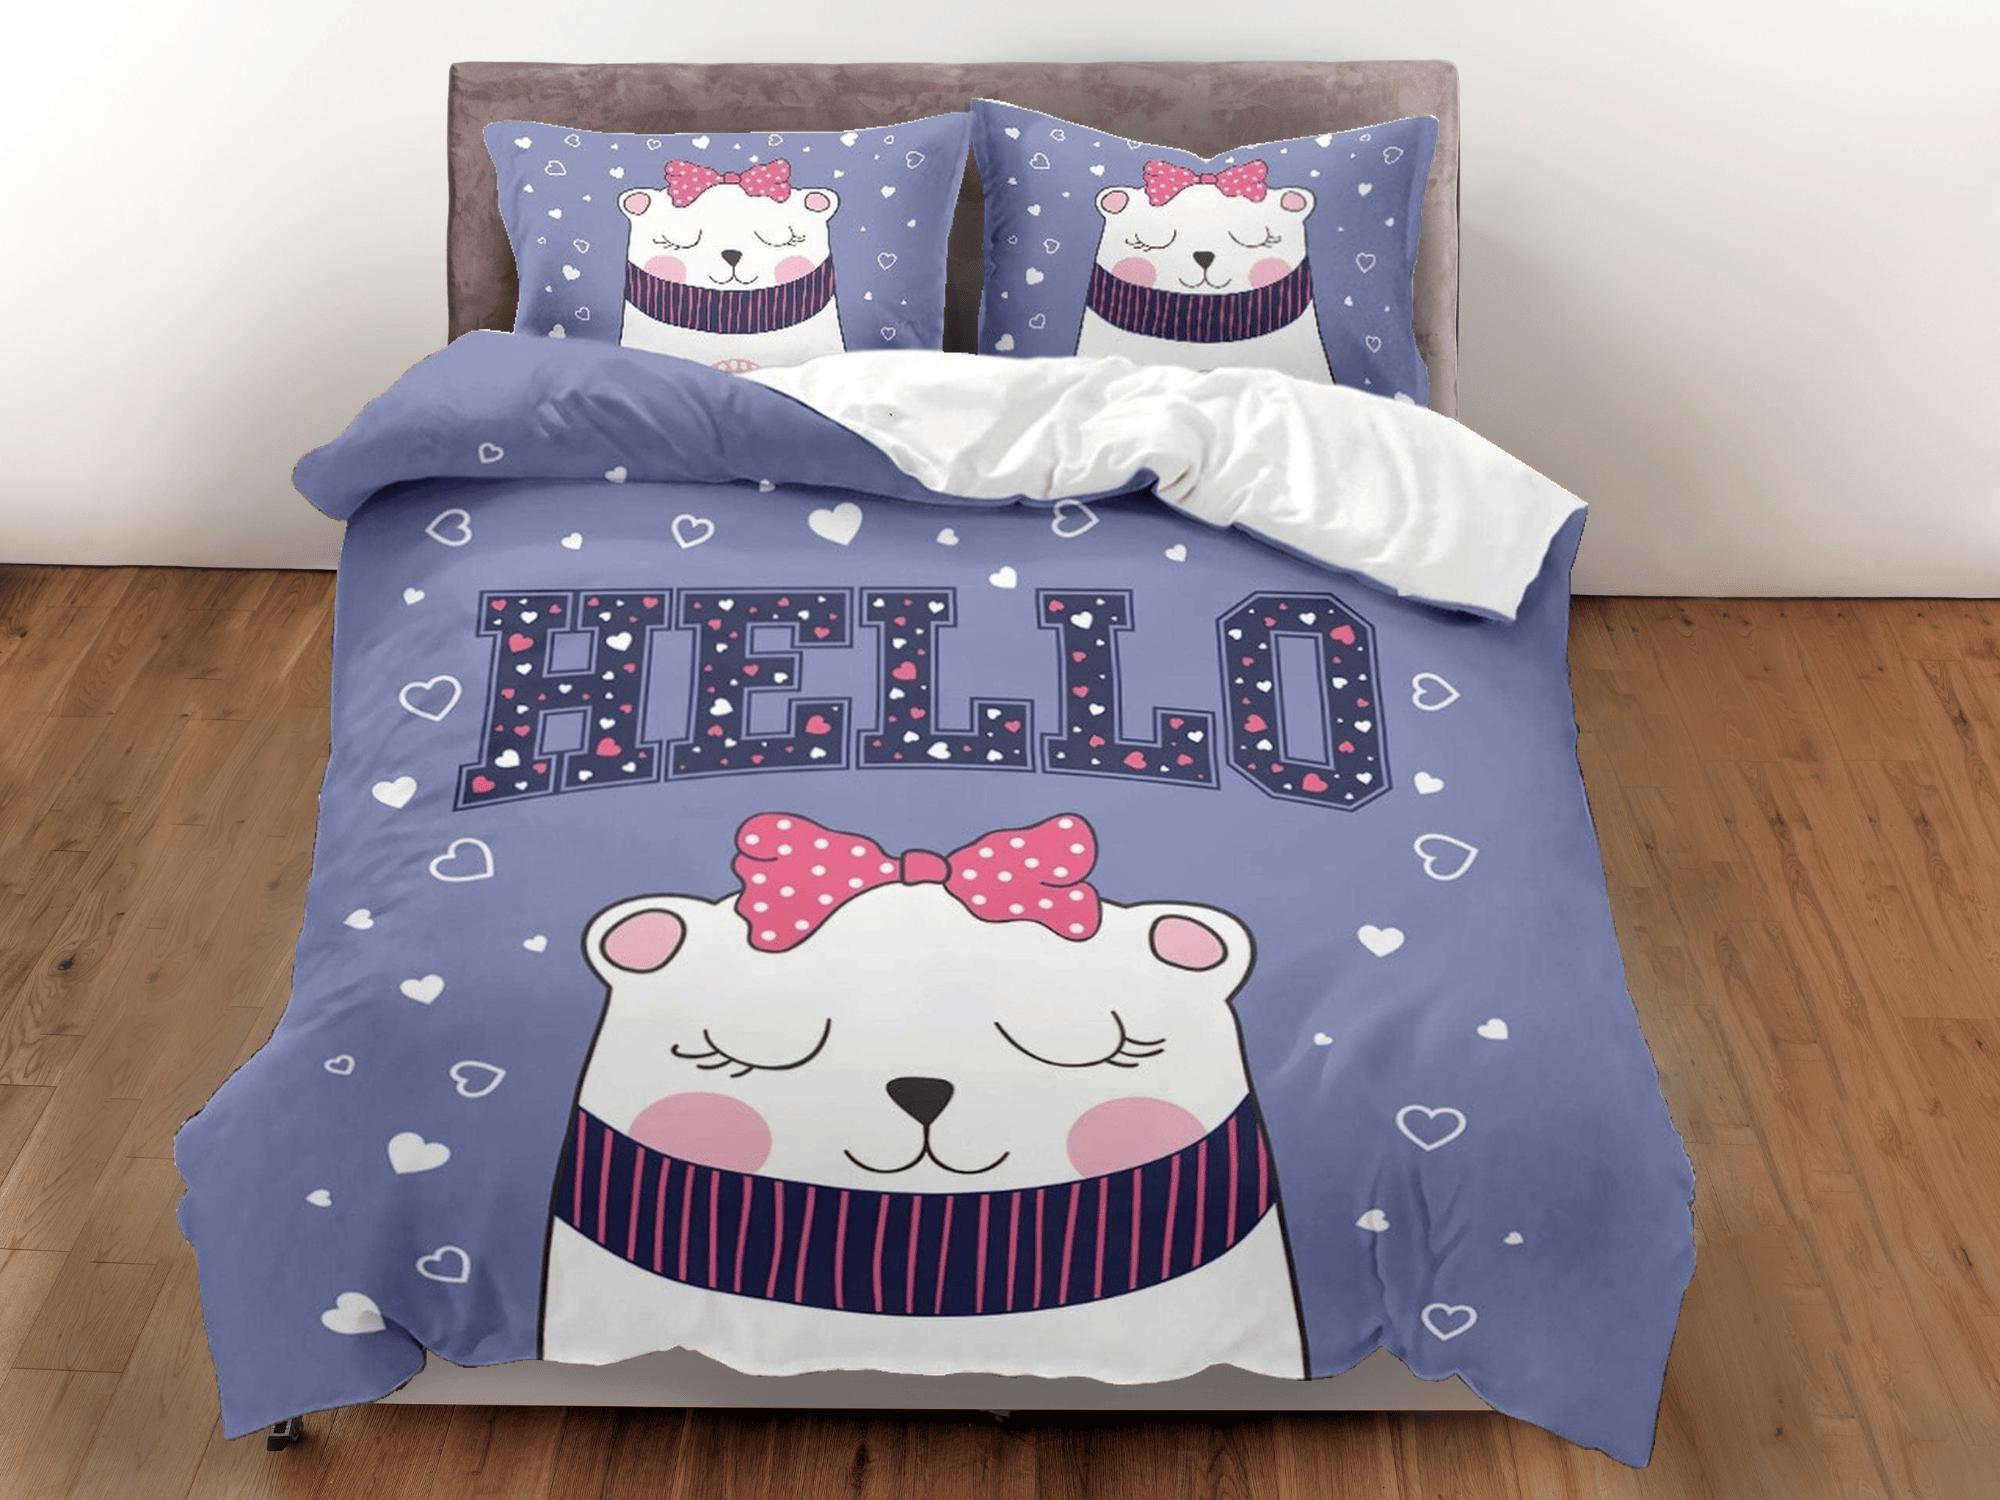 daintyduvet Hello cat bedding purple, toddler bedding, kids duvet cover set, gift for cat lovers, baby bedding, baby shower gift, white cat